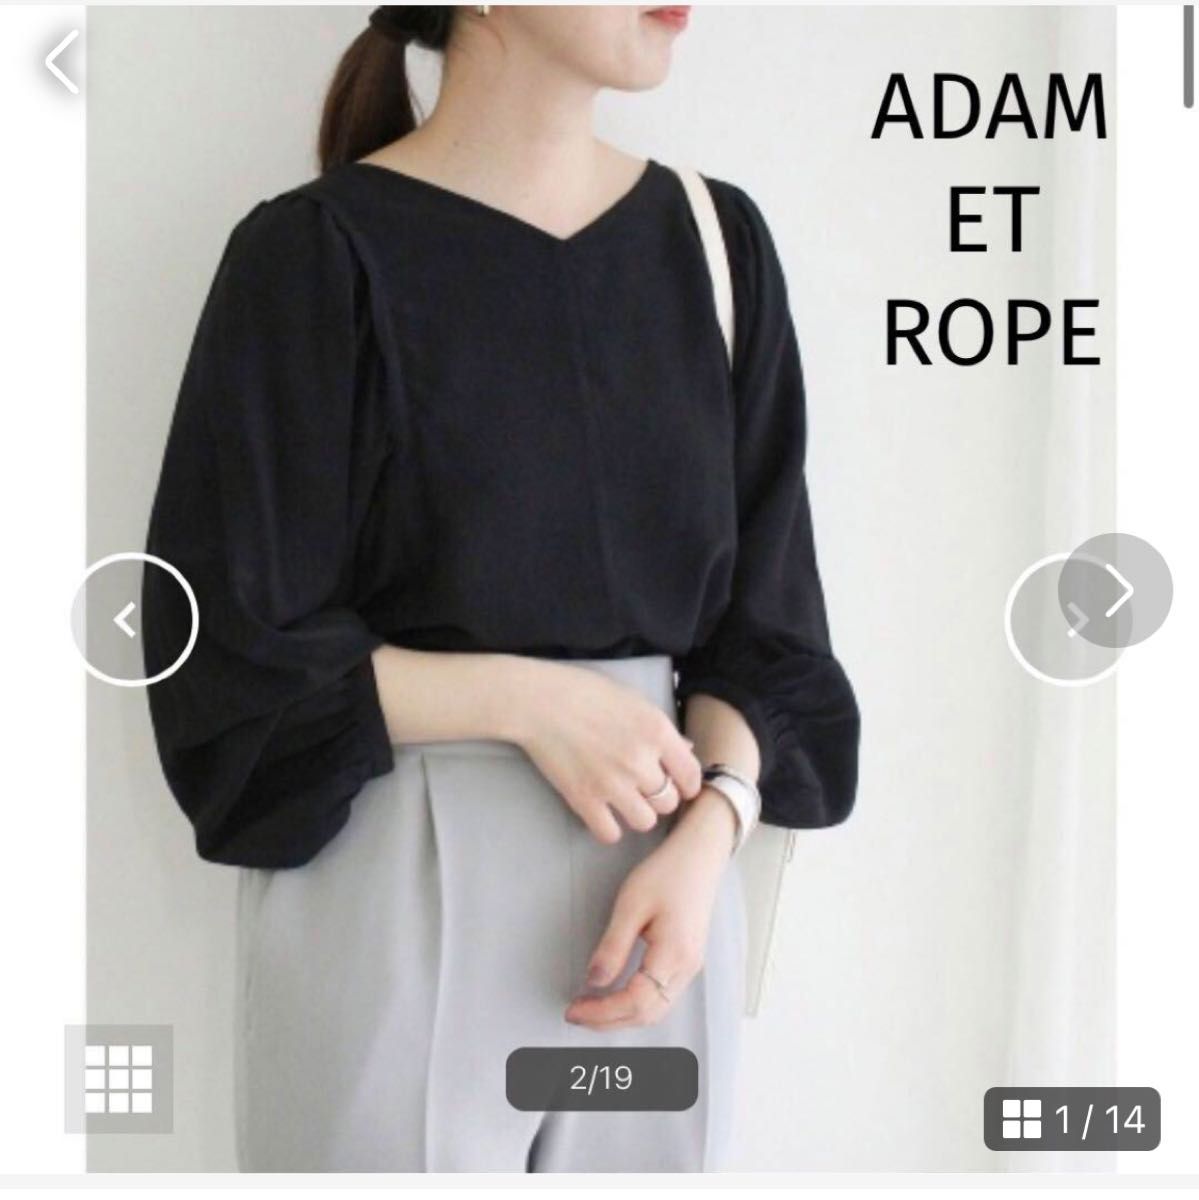 【アダムエロペ】ギャザースリーブブラウス【一部店舗限定】Adam et rope 黒 カットソー ブラウス ブラック  長袖